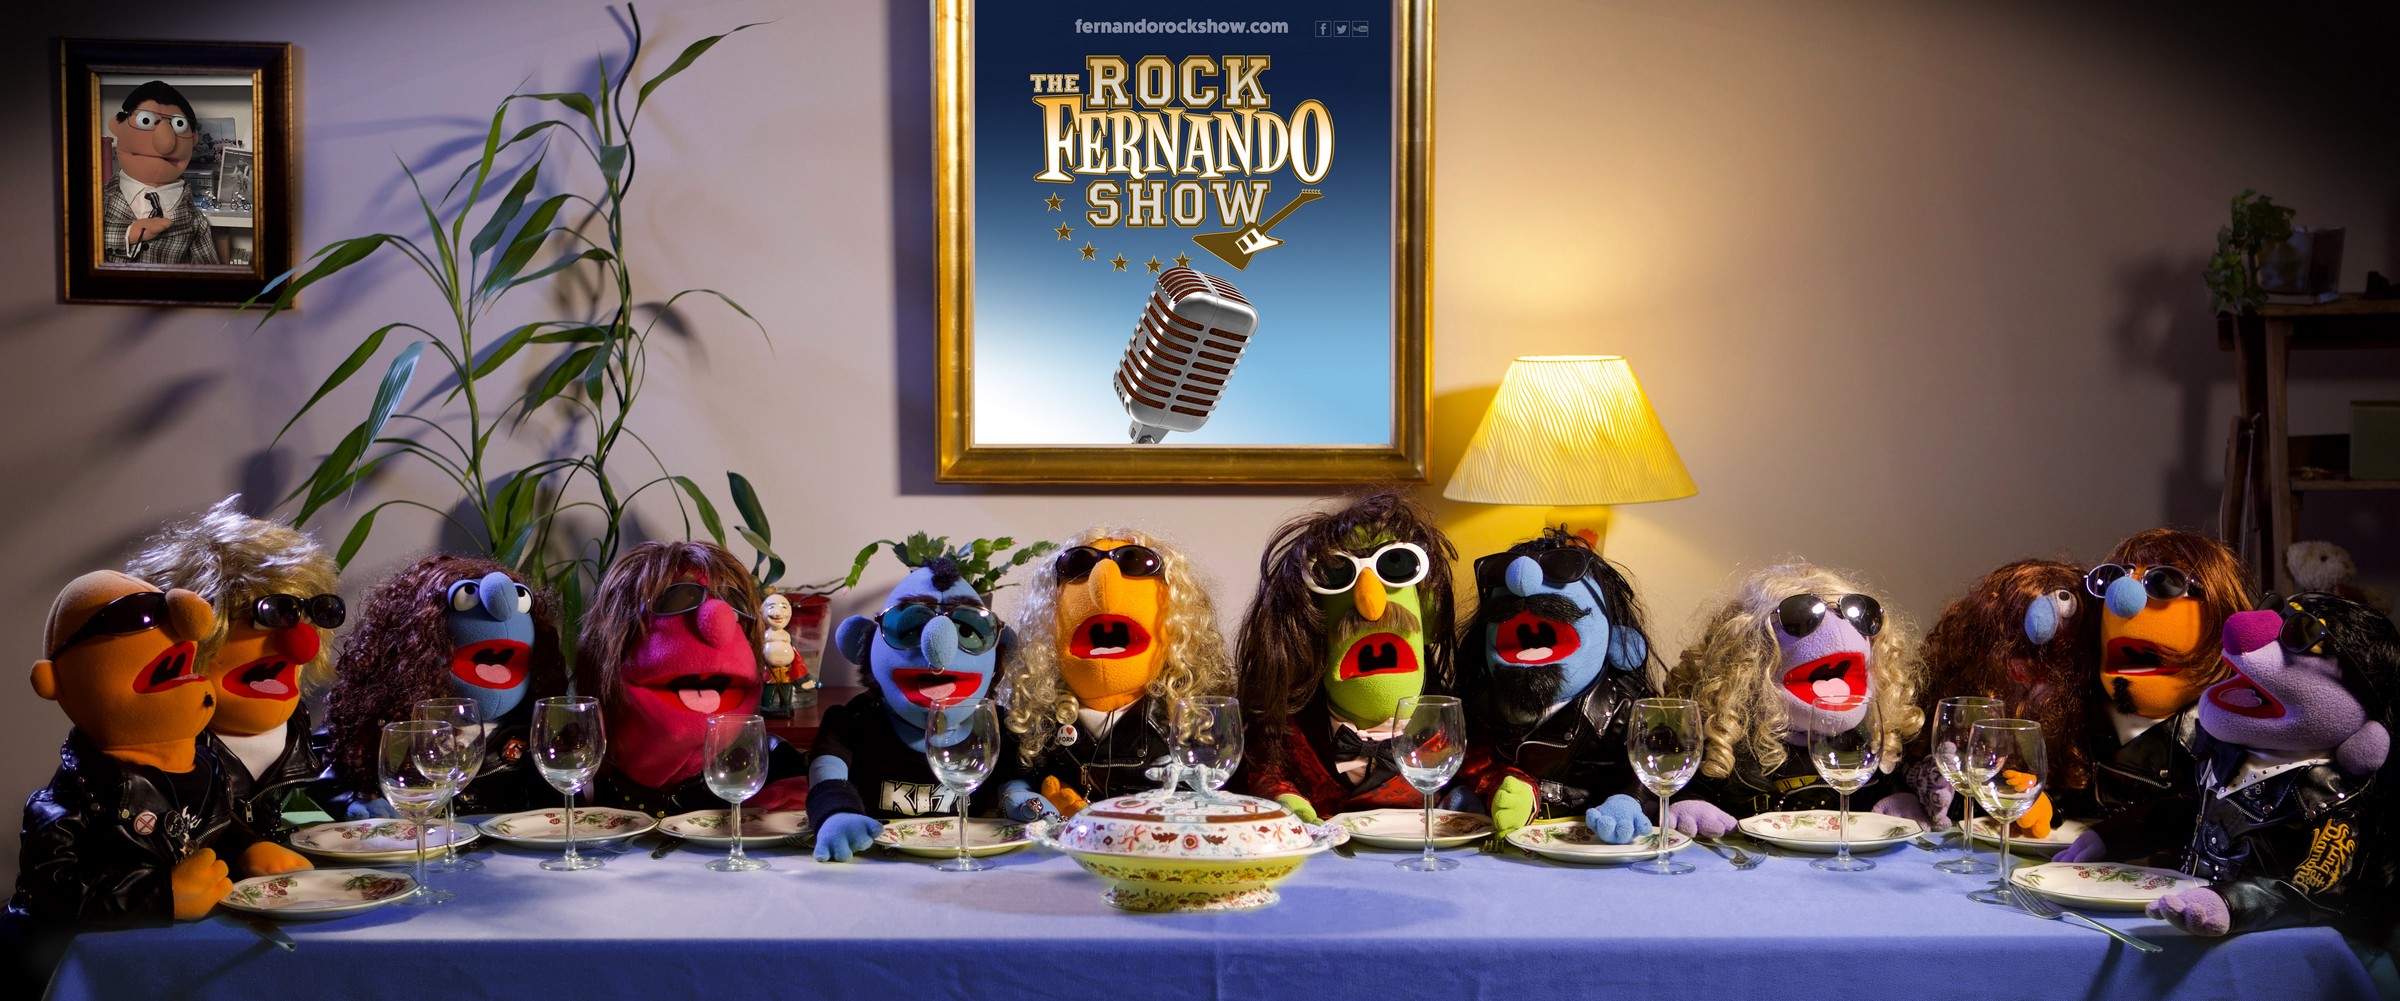 Fernando-rock-show-puppets